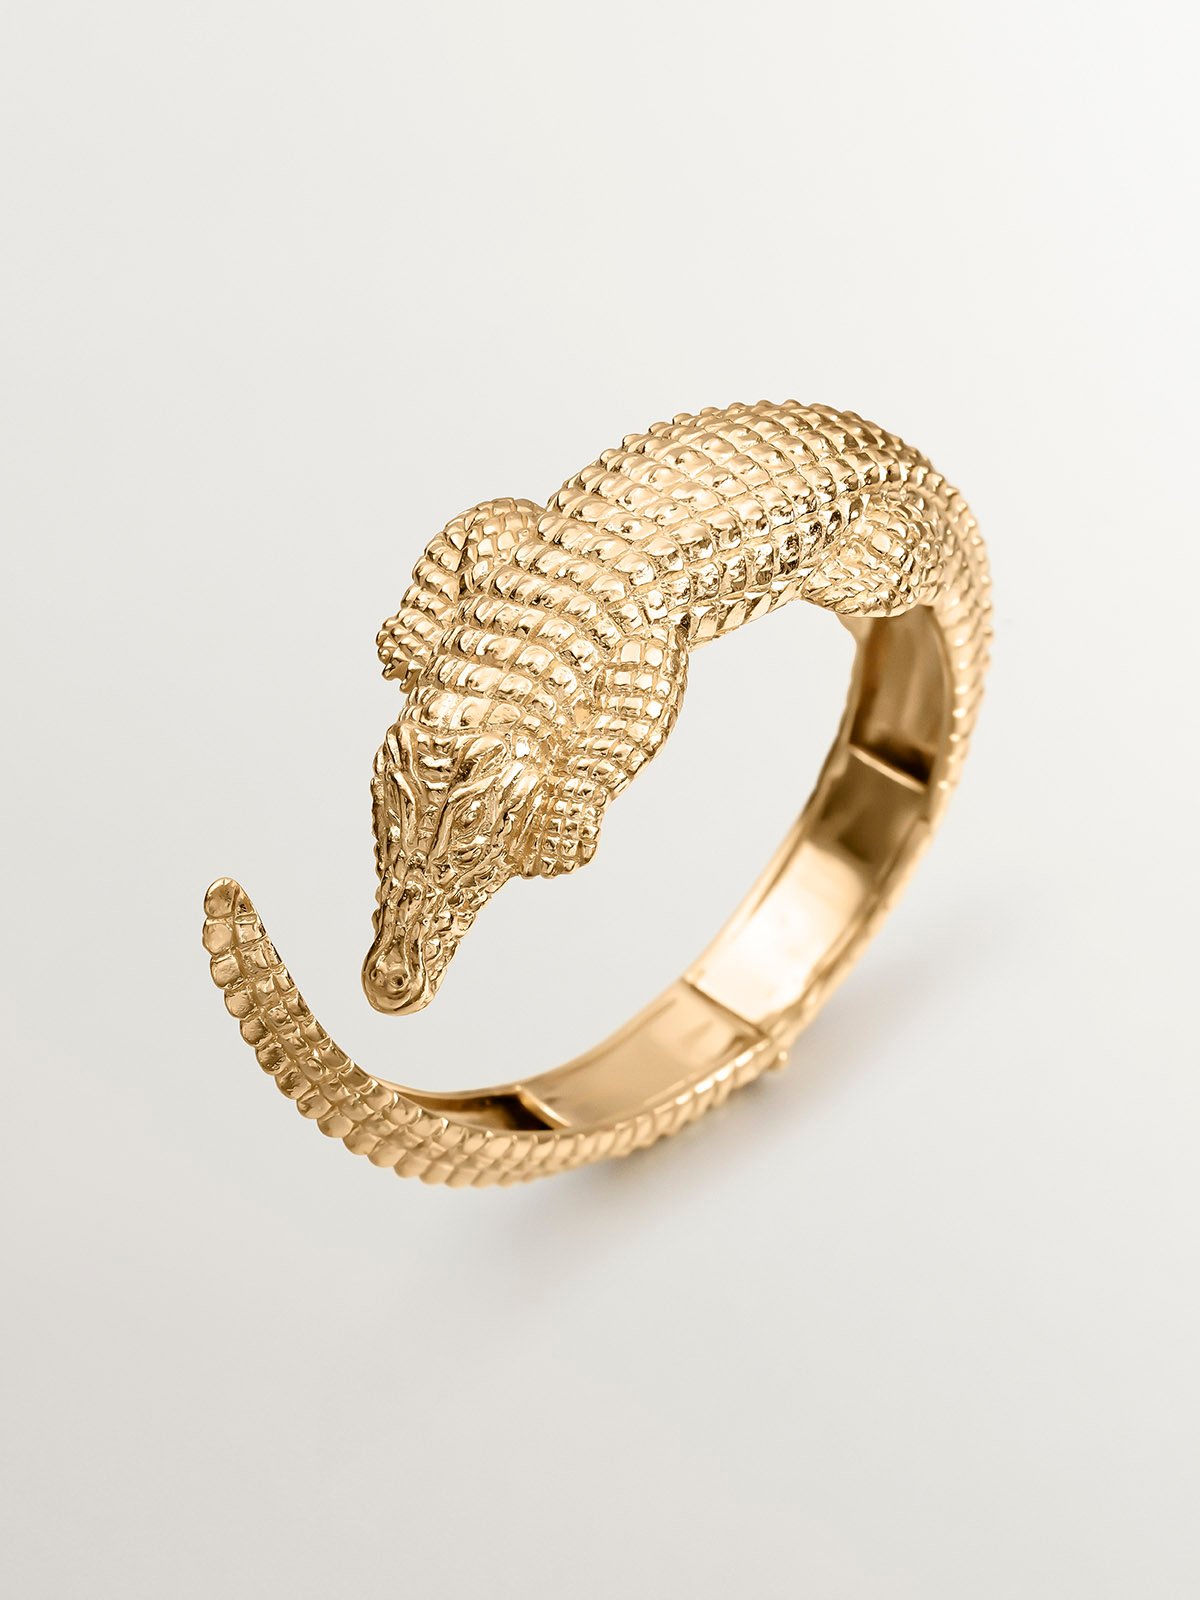 Bracelet en argent 925 plaqué en or jaune 18K en forme de crocodile